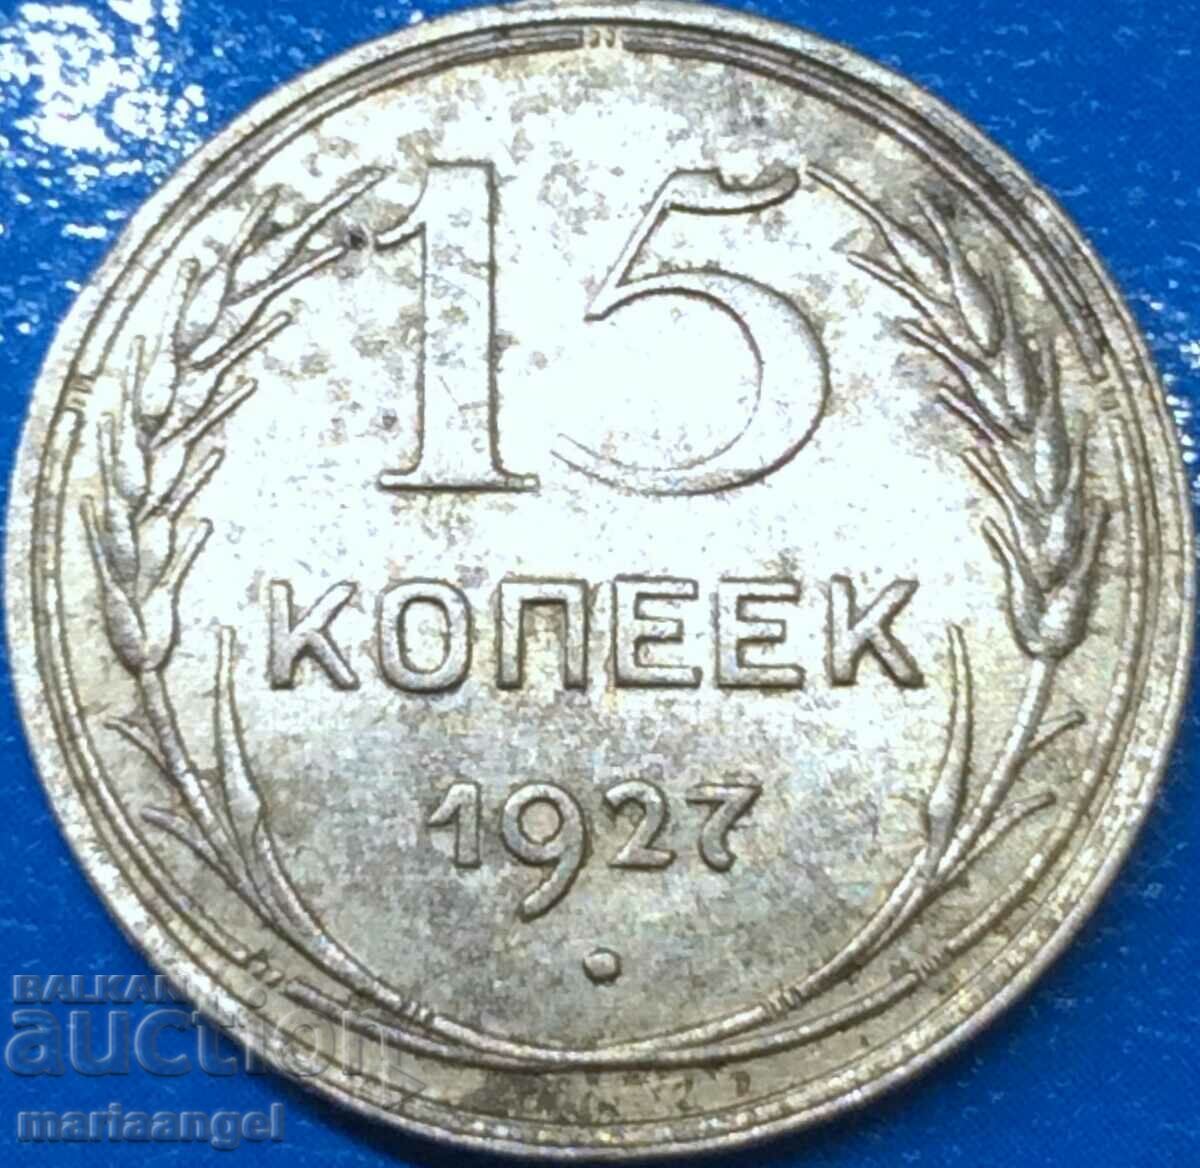 15 kopecks 1927 Russia USSR ruler Stalin silver